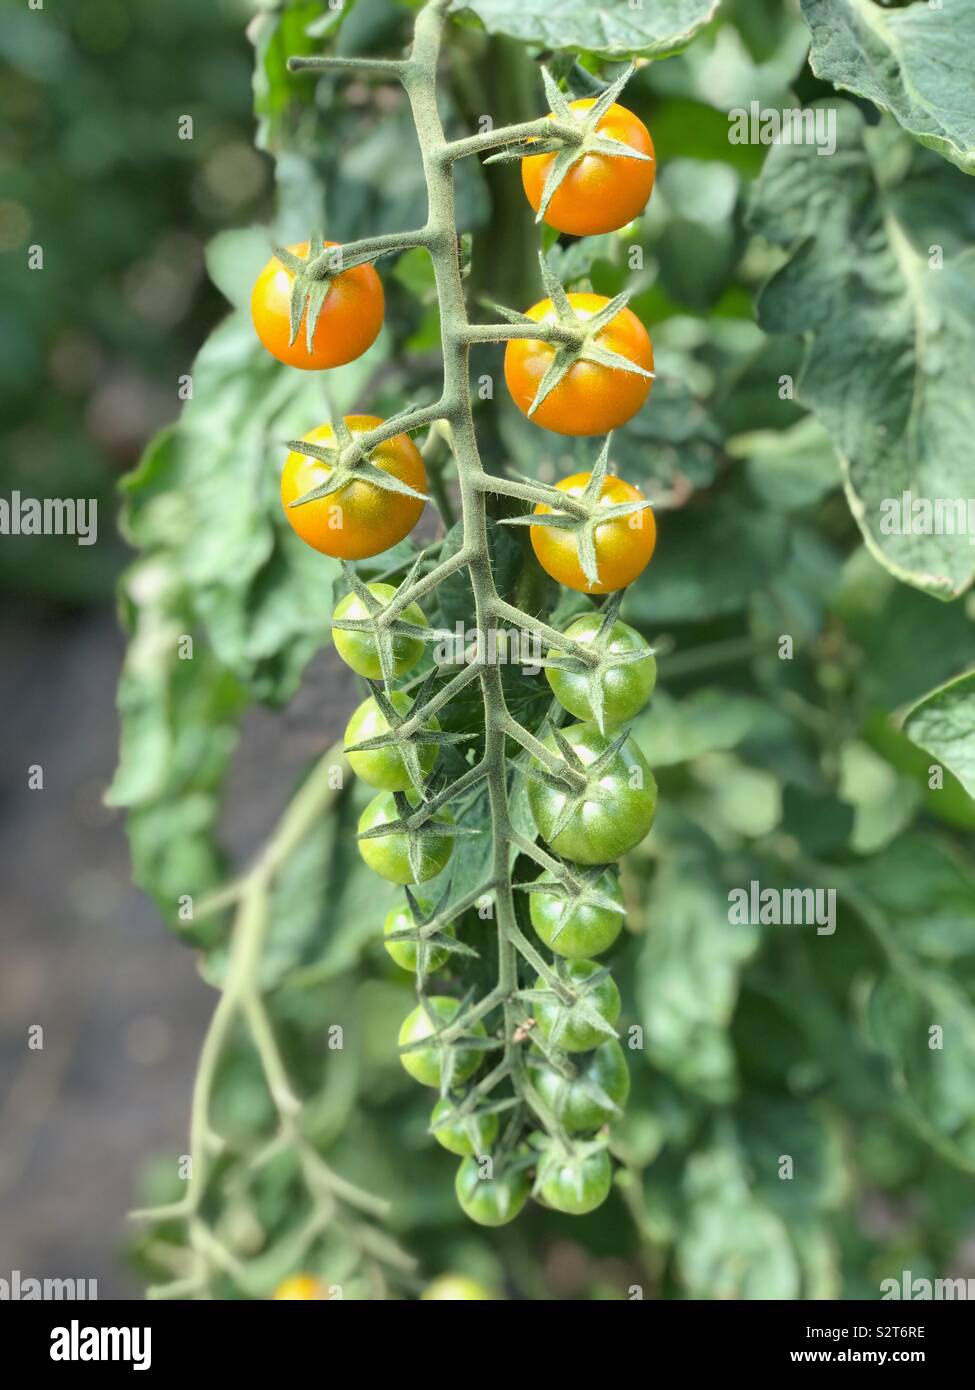 Golden sun tomatoes on the vine Stock Photo